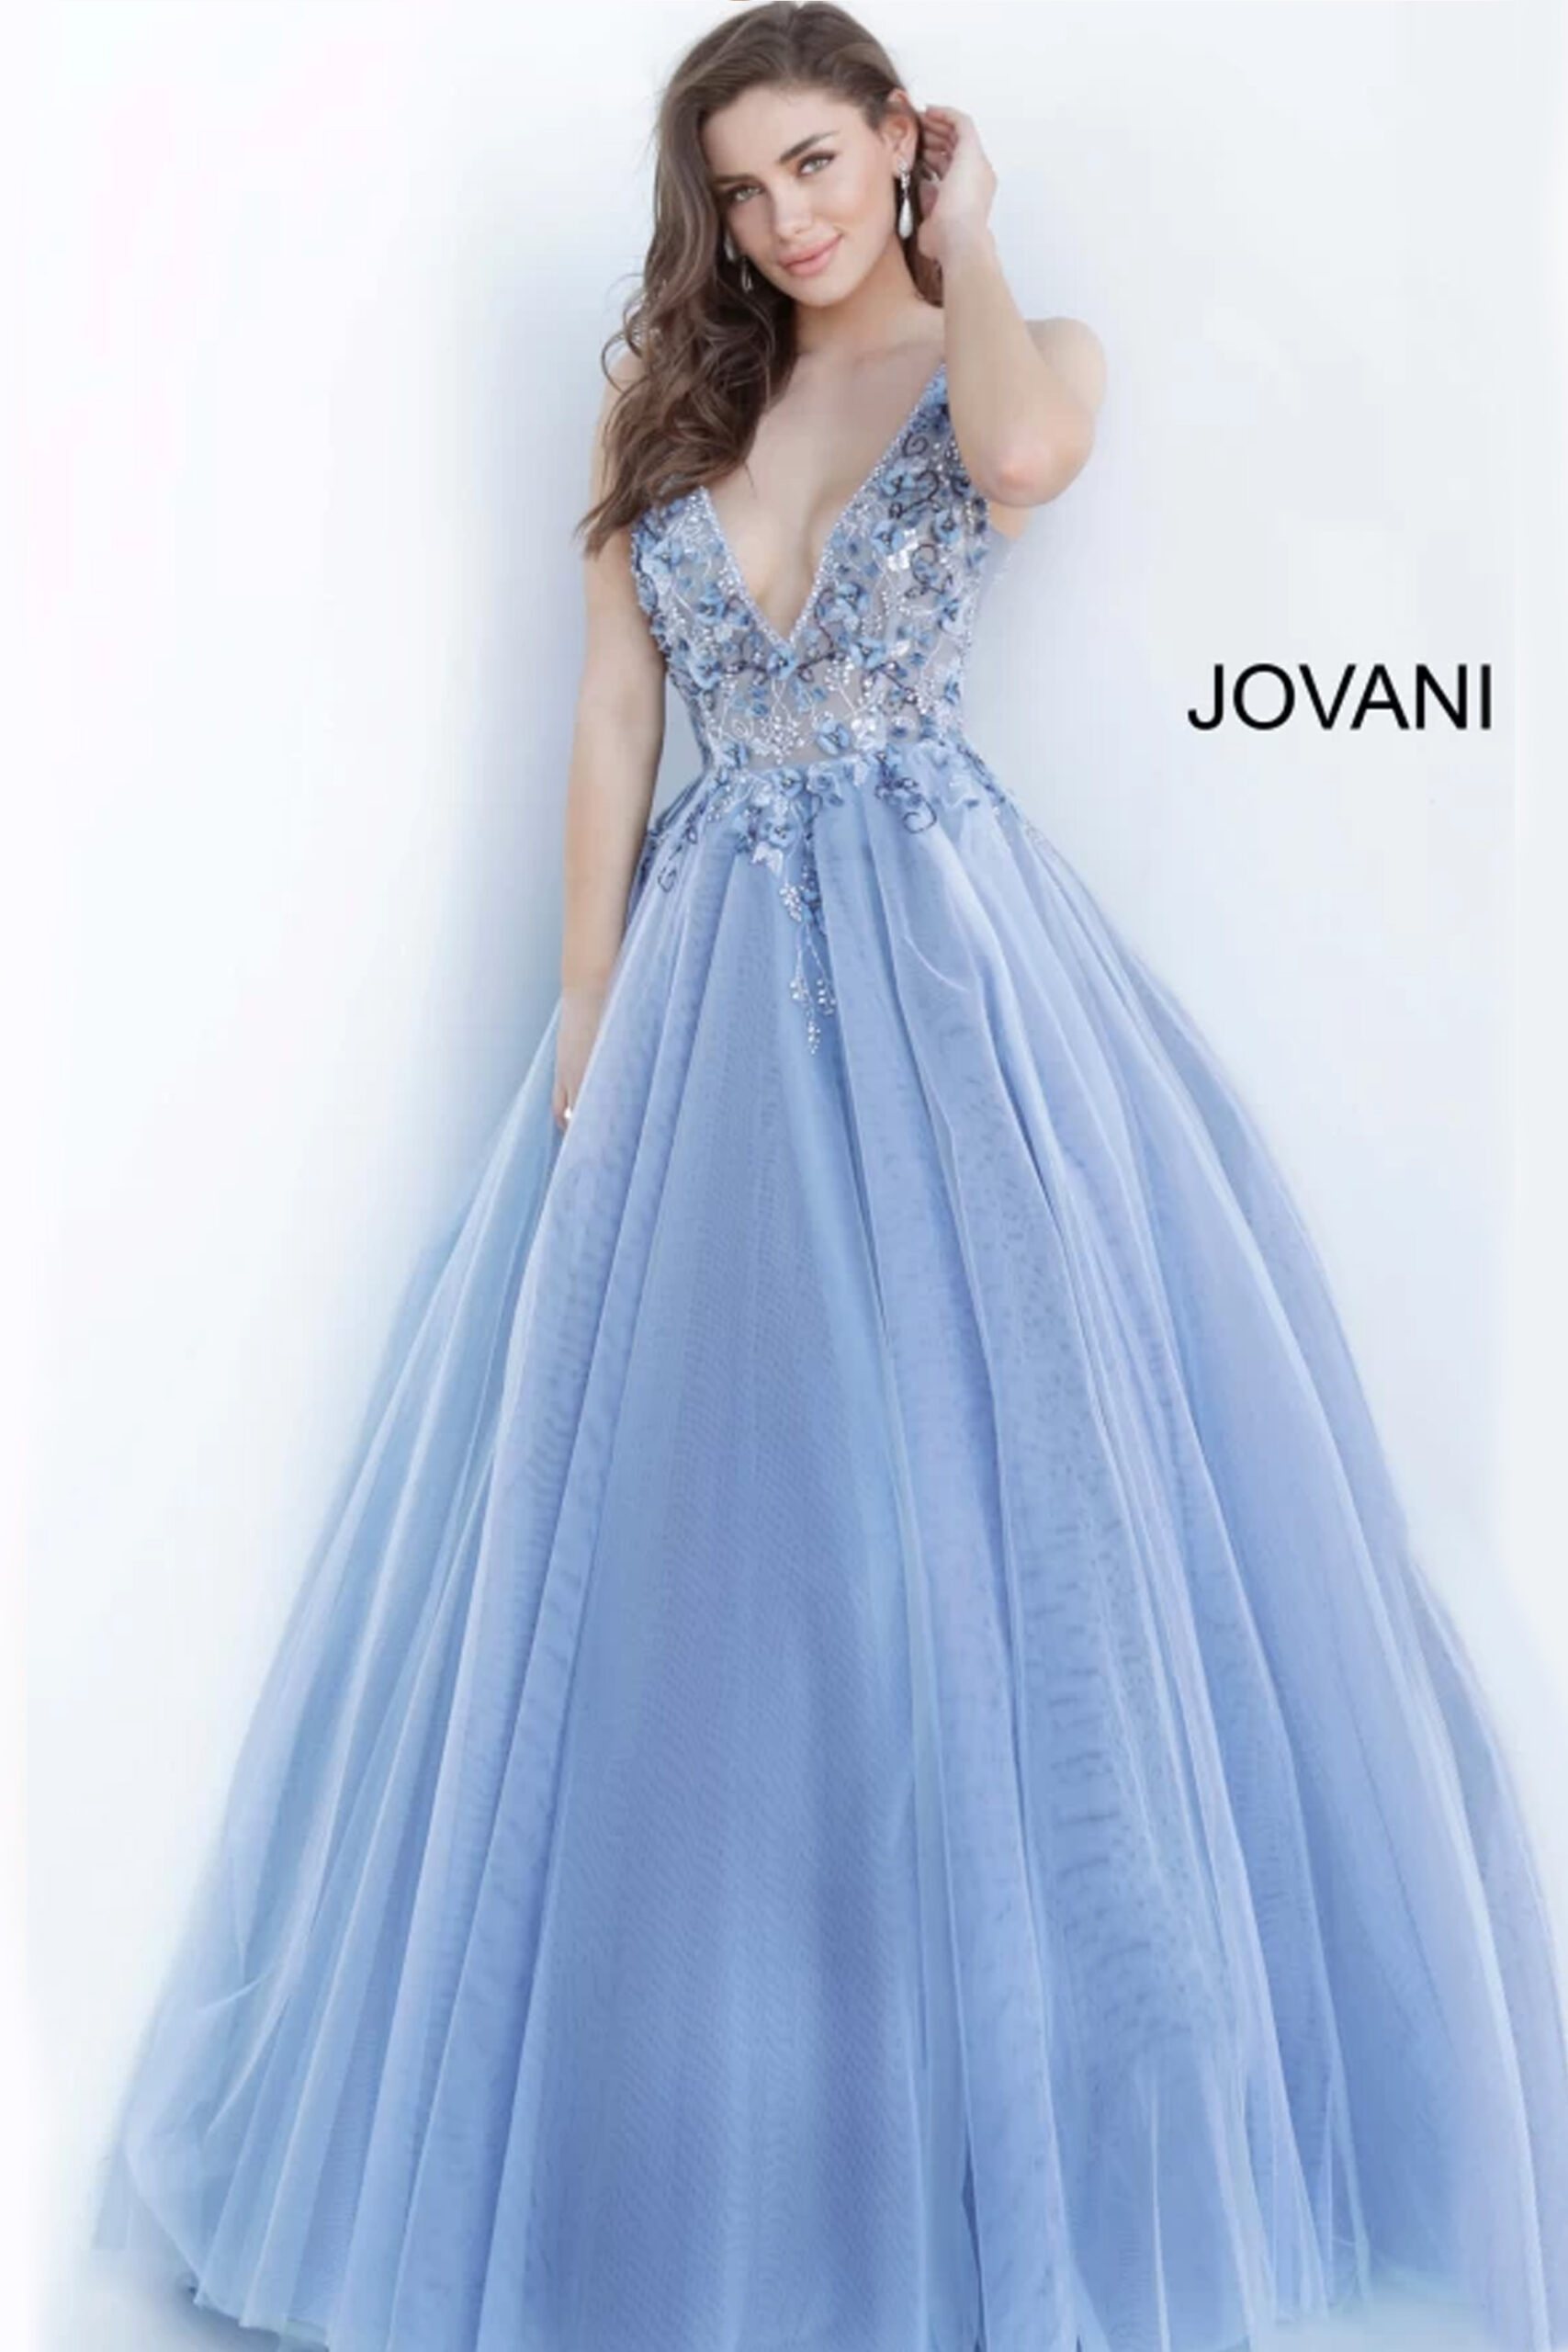 Jovani 3110 Blue Floral Embellished Ballgown